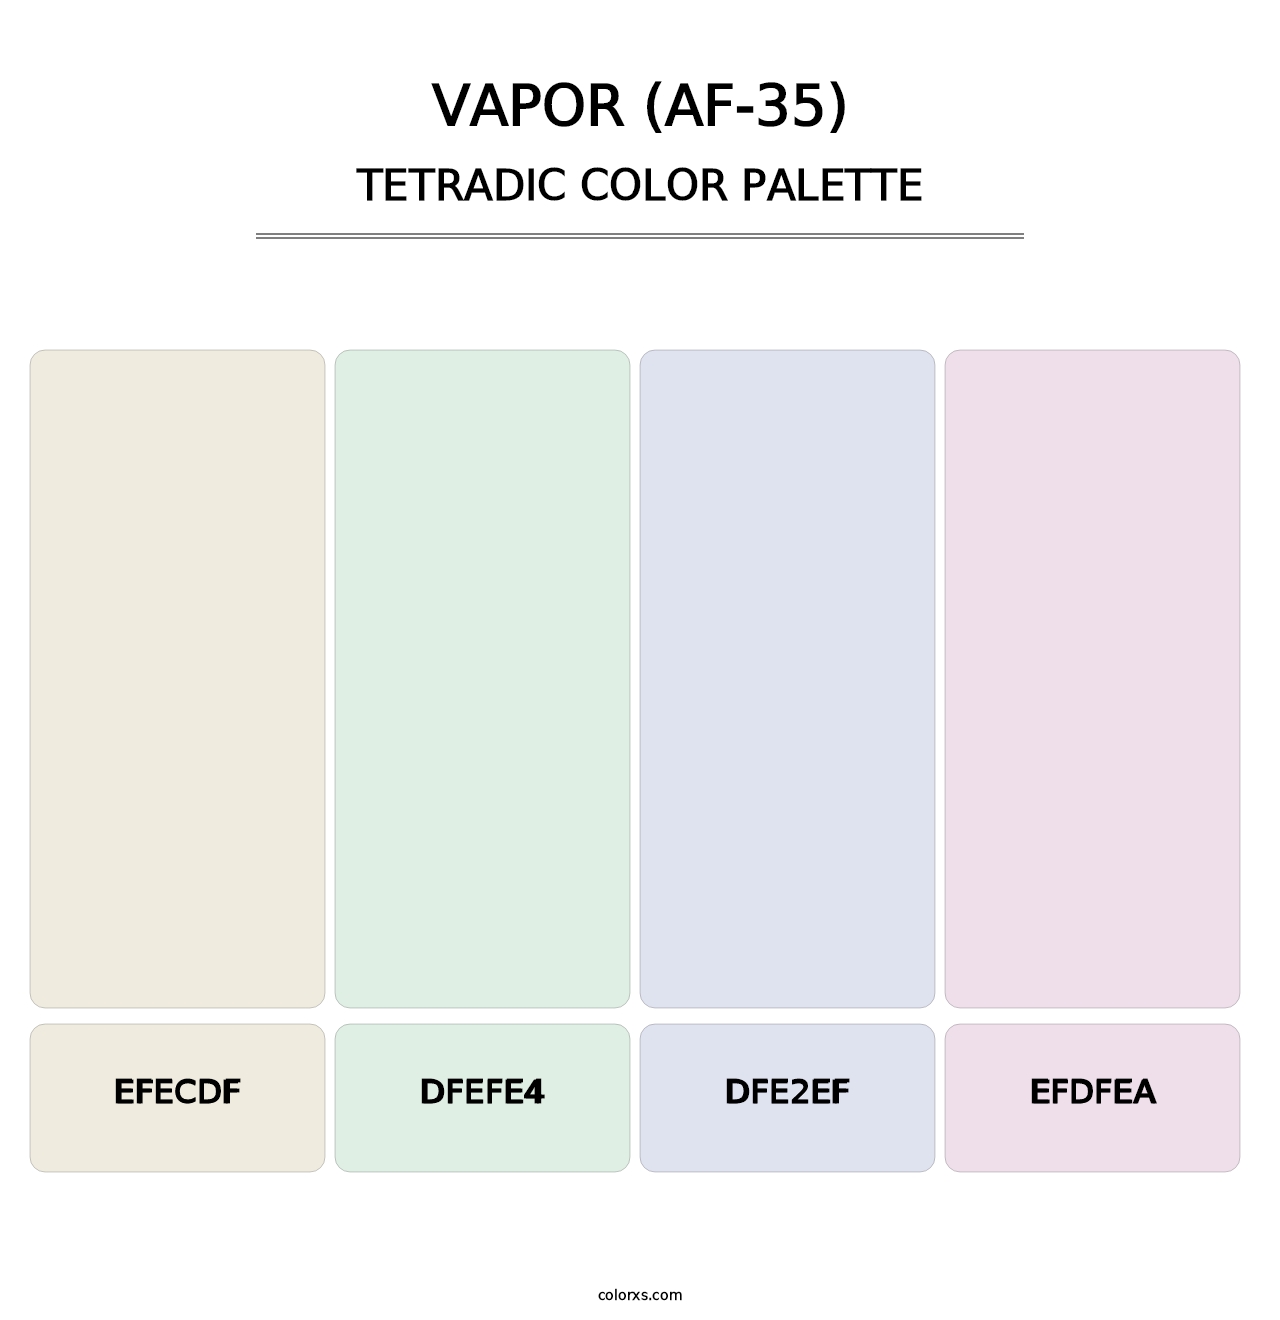 Vapor (AF-35) - Tetradic Color Palette